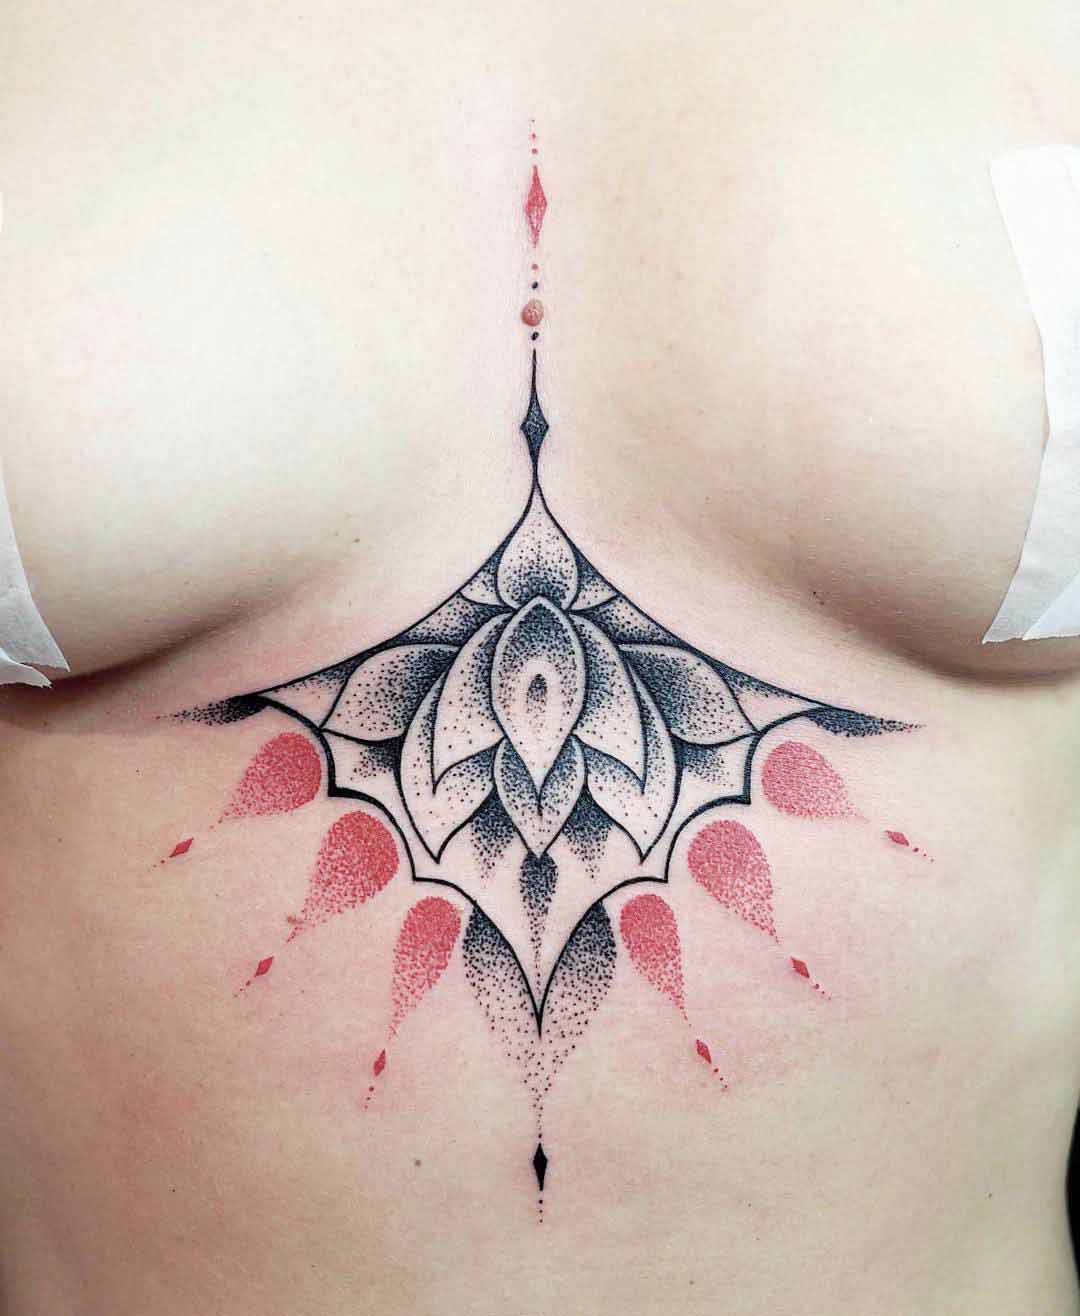 Under Breast Tattoo Ideas - Best Tattoo Ideas Gallery